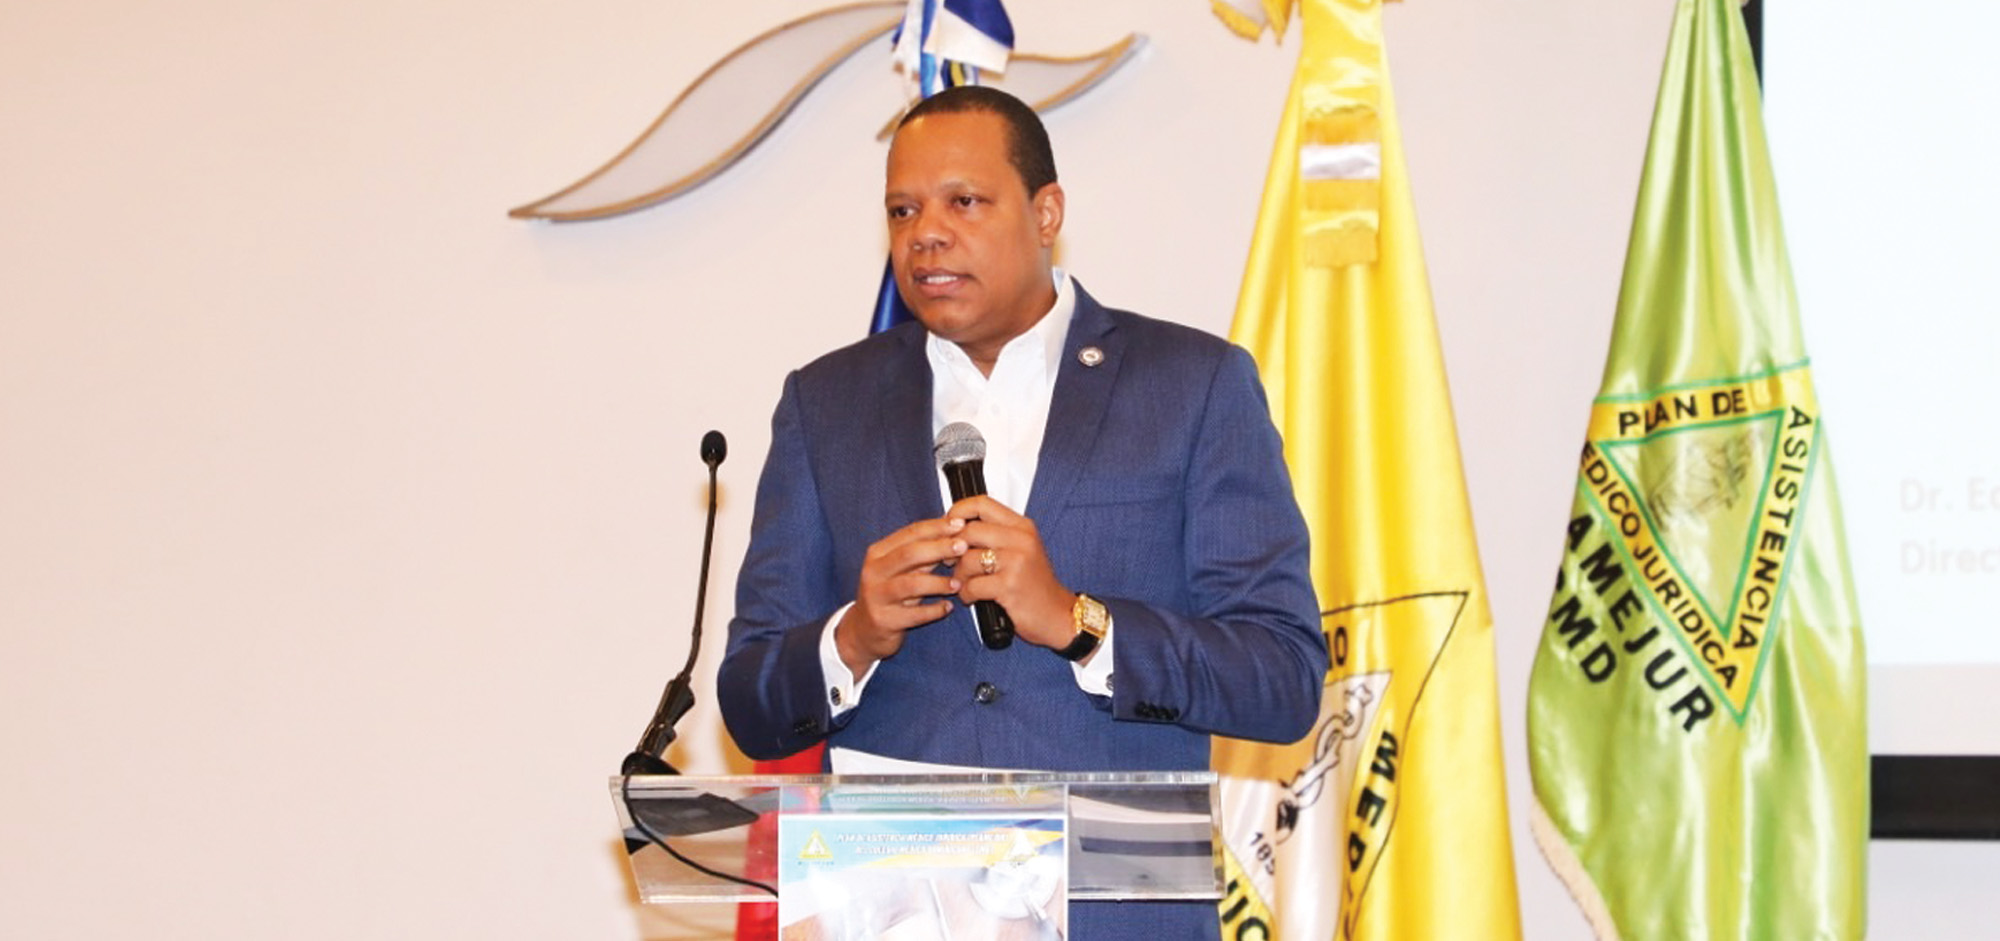 El director ejecutivo de Pro Consumidor, Eddy Alcántara, habla en el III Congreso Dominicano de Derecho Médico, donde solicitó a la directiva del CMD sentarse en la mesa del diálogo para buscar una solución a sus reclamos.